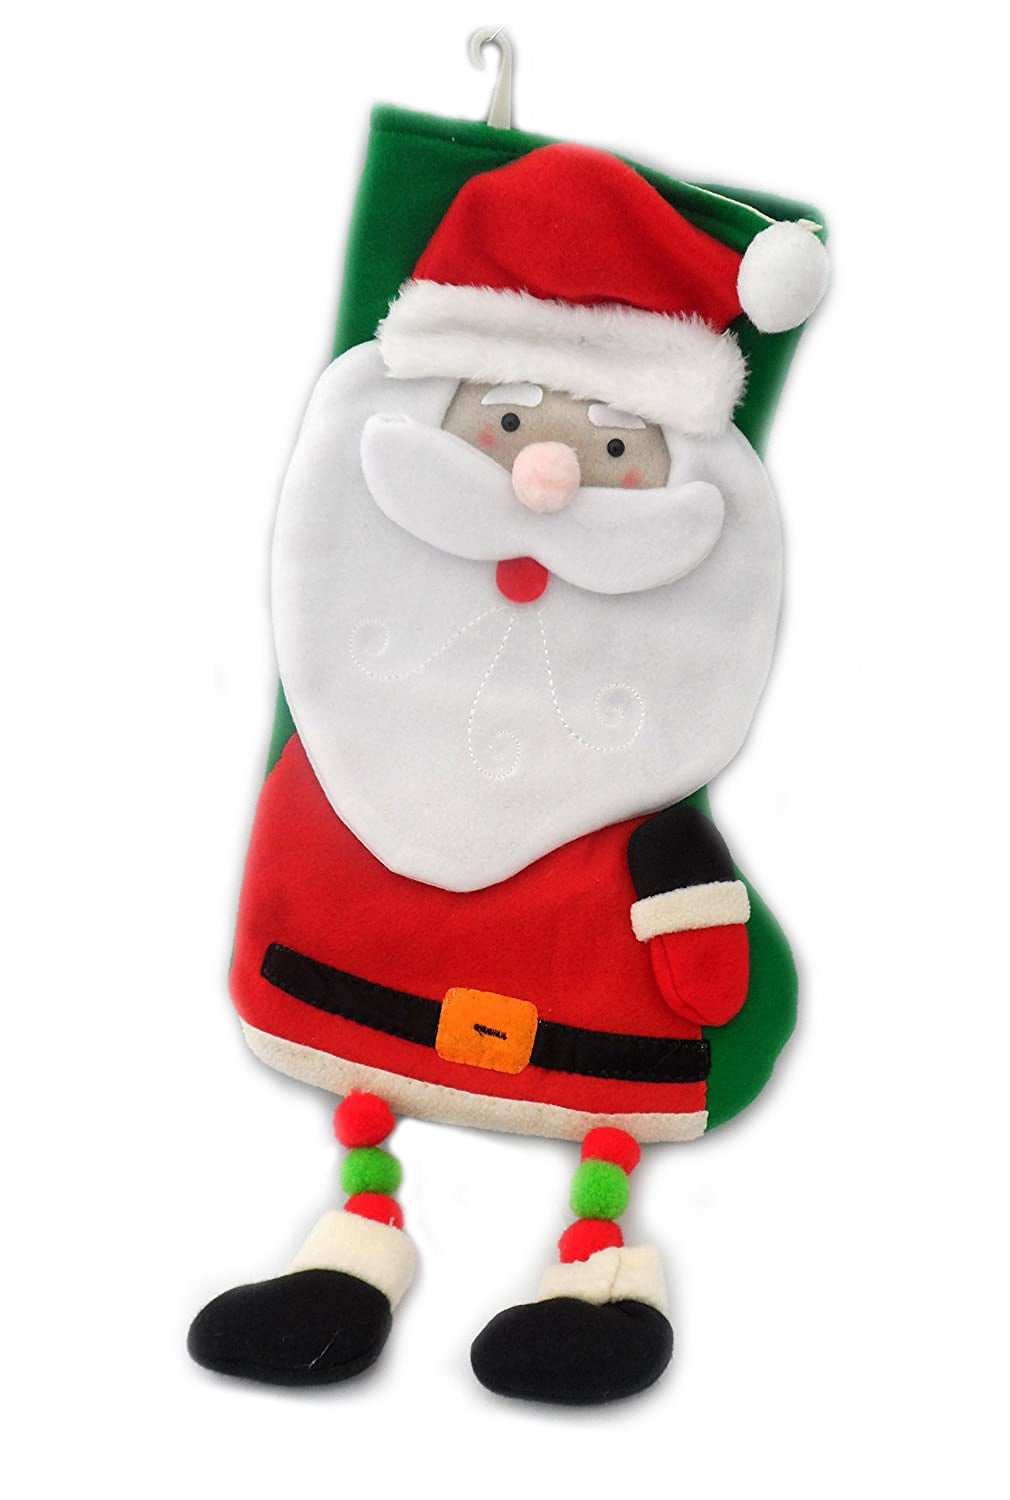 Plush Santa Christmas Stocking with Dangly Feet, Large Felt Xmas Decoration 56cm